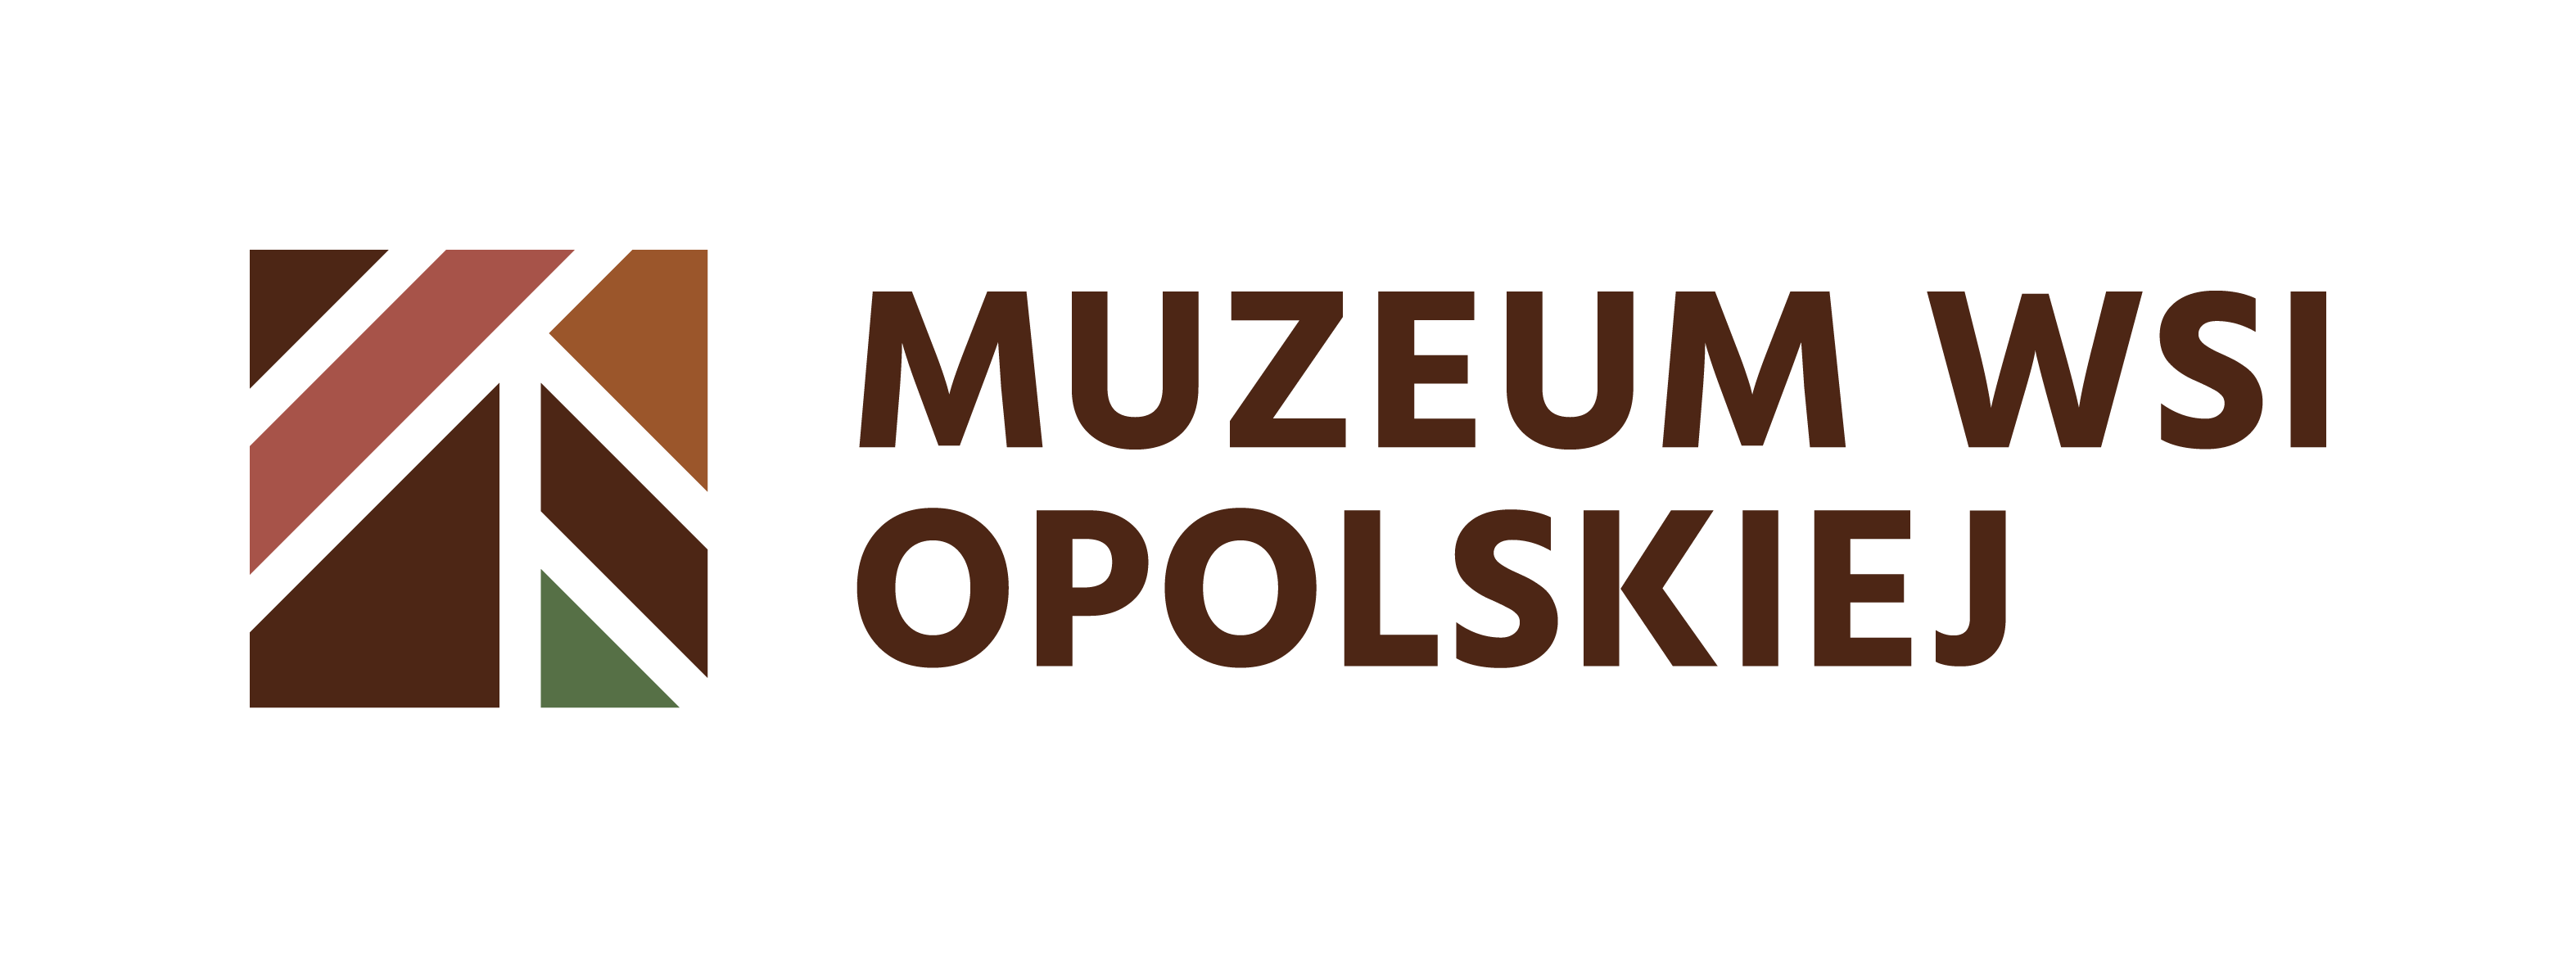 Muzeum Wsi Opolskiej w Opolu